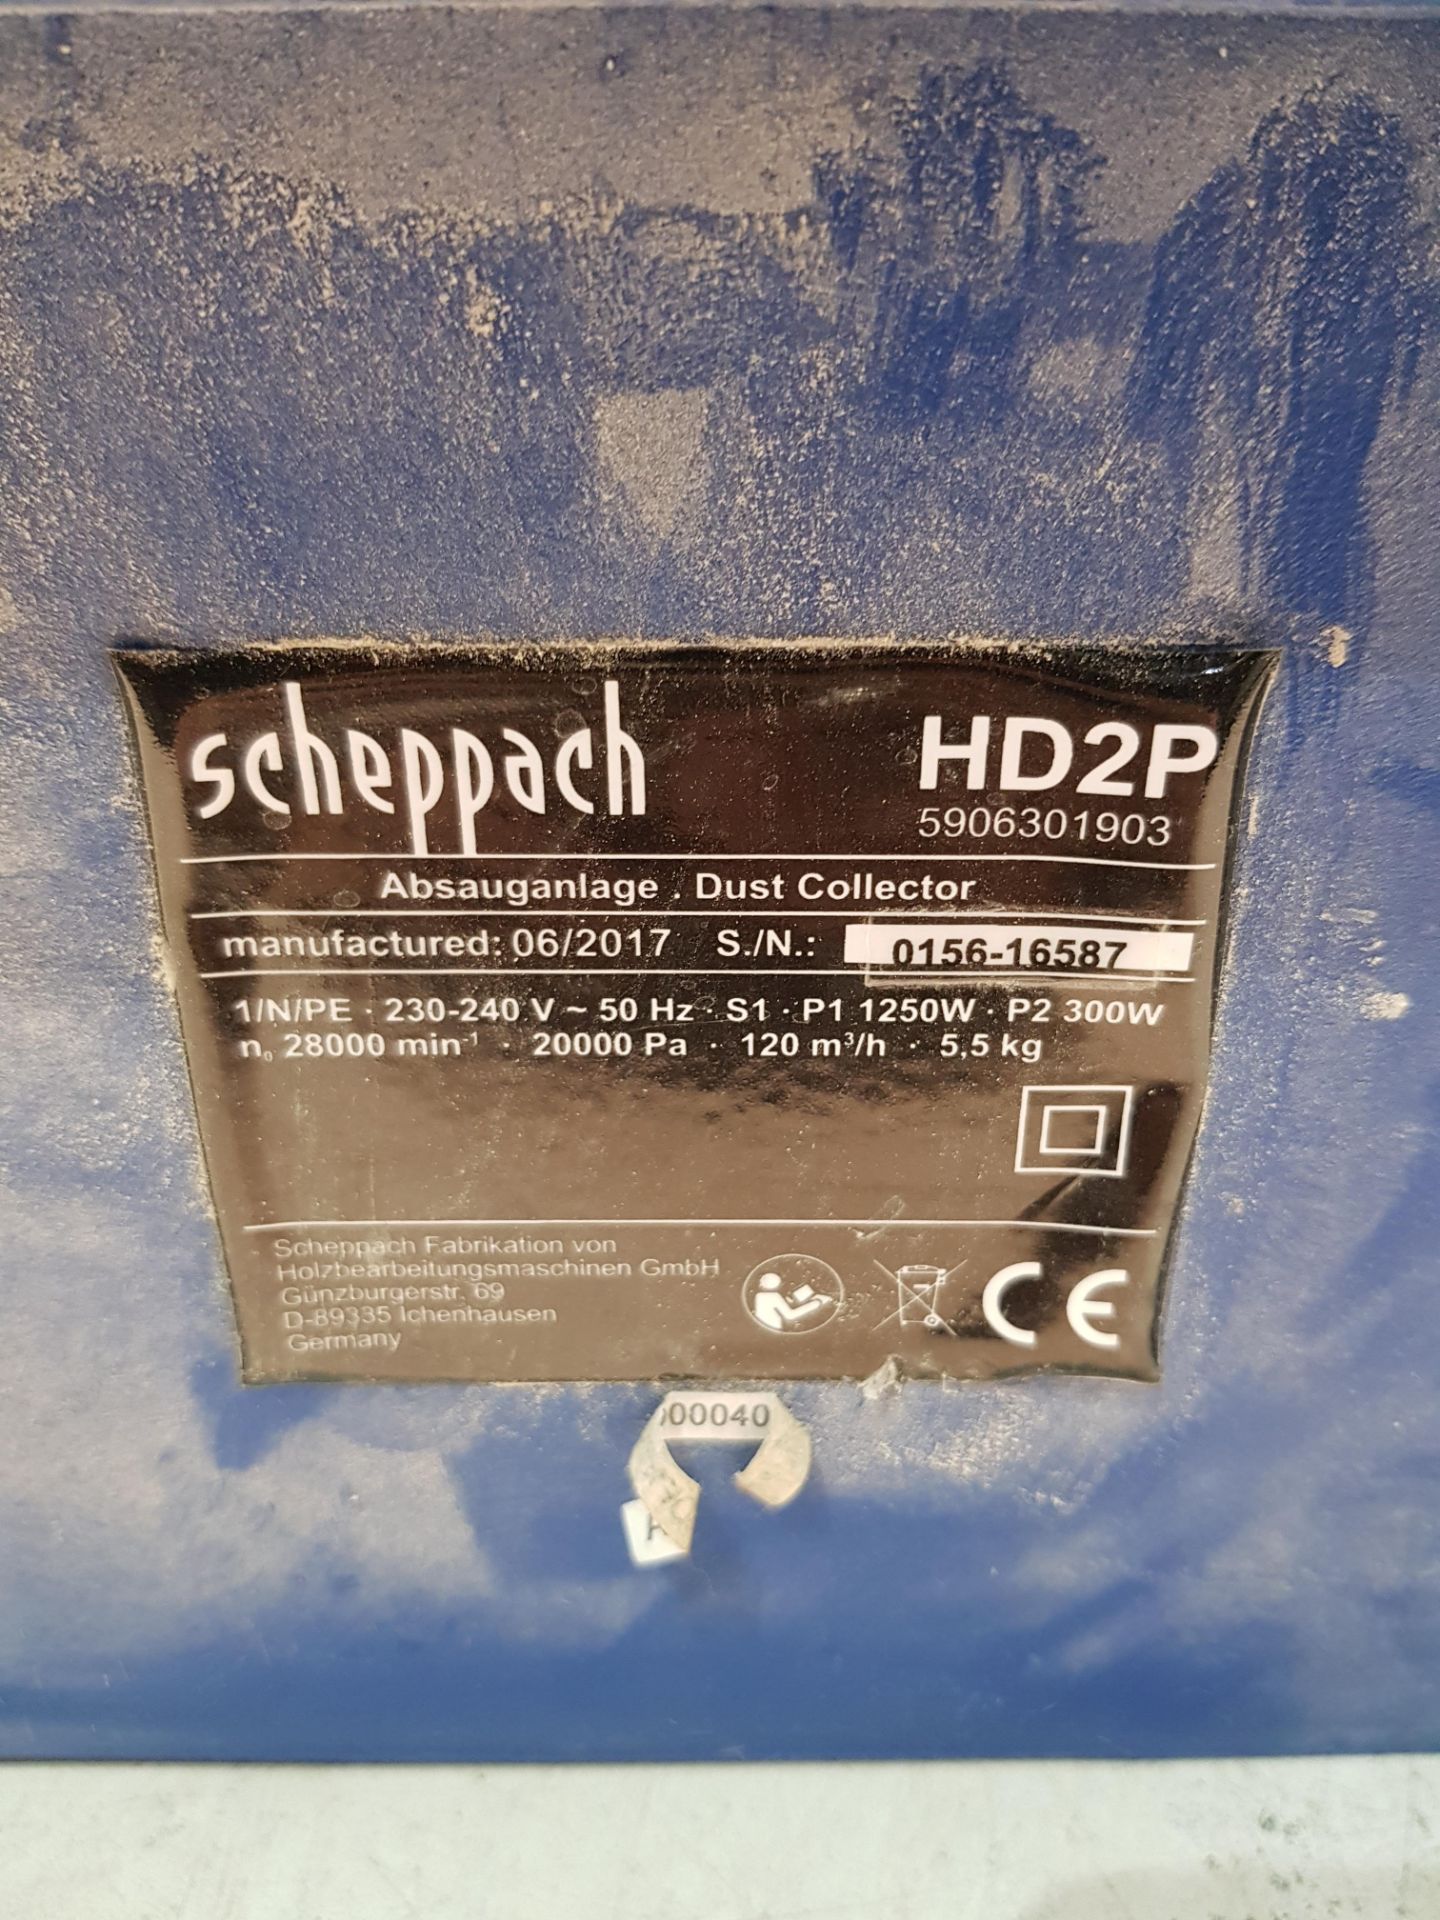 Scheppach Dust Collector S/N: 0156-16587 - Bild 3 aus 3